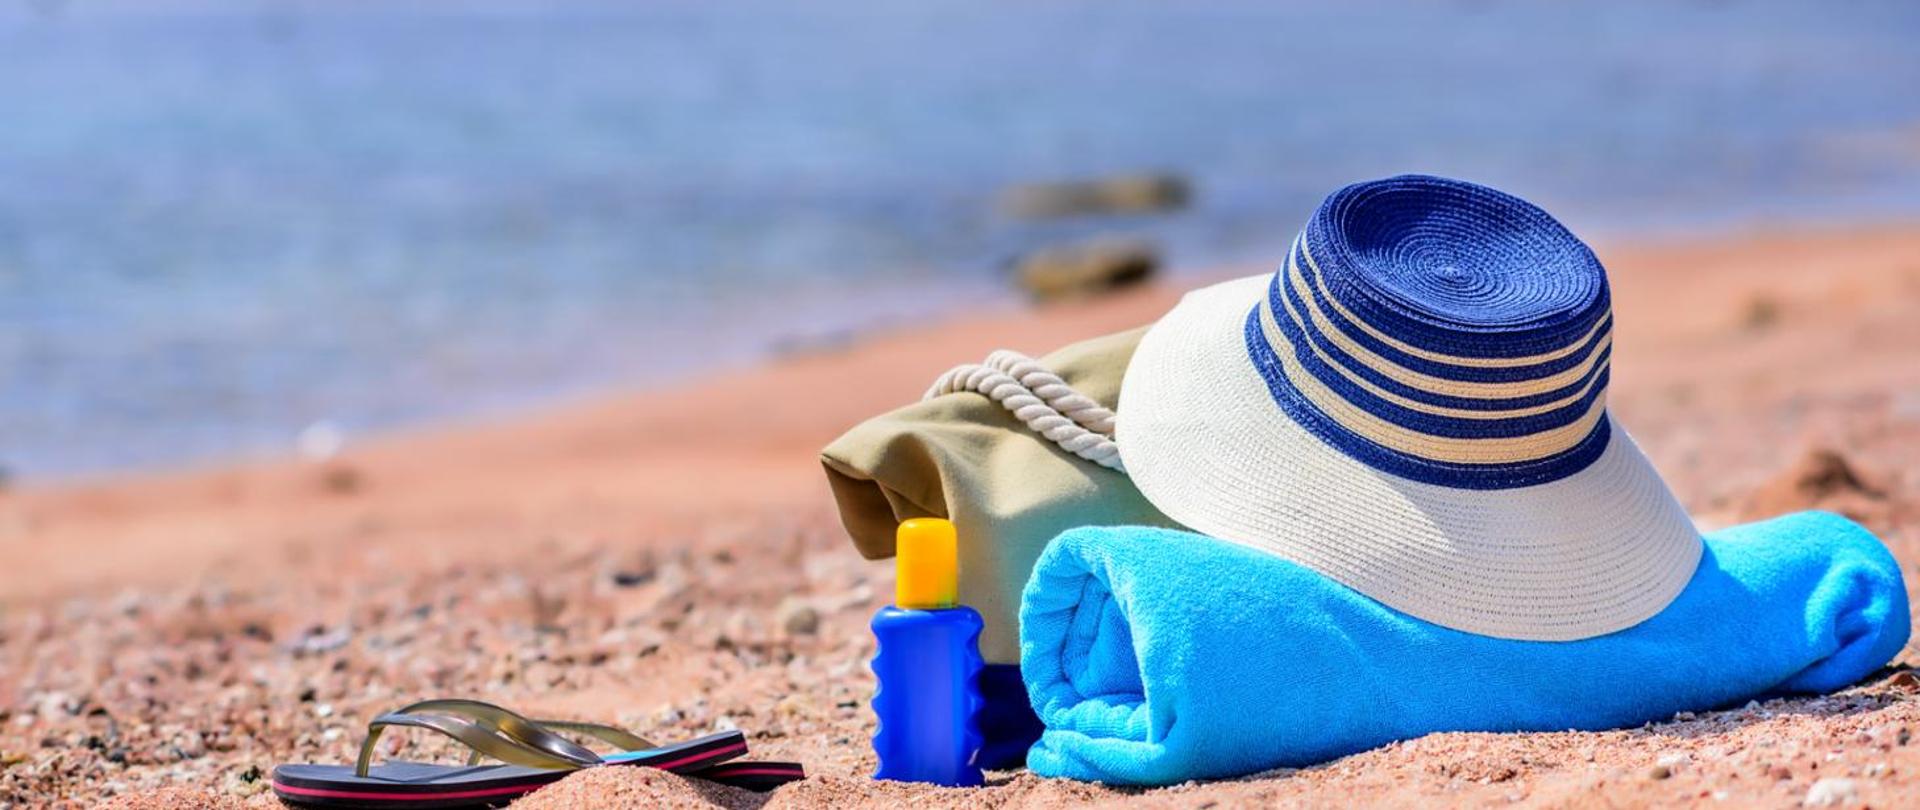 plaża piasek w tle morze, na piasku kapelusz, torba plażowa,ręcznik plażowy, krem do opalania